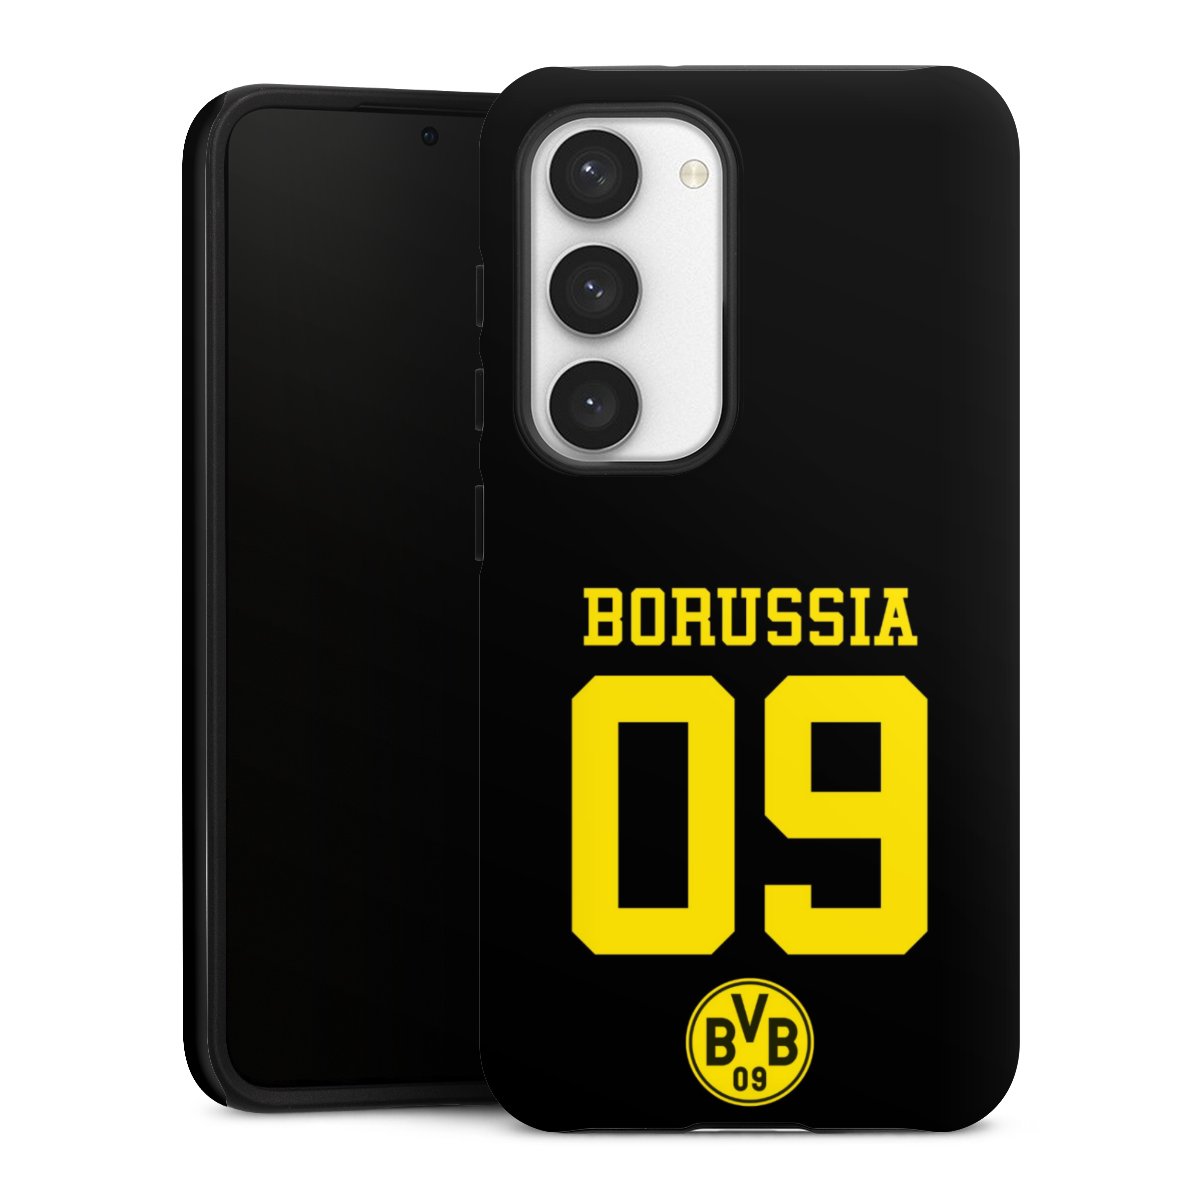 Borussia 09 Zwart - BVB